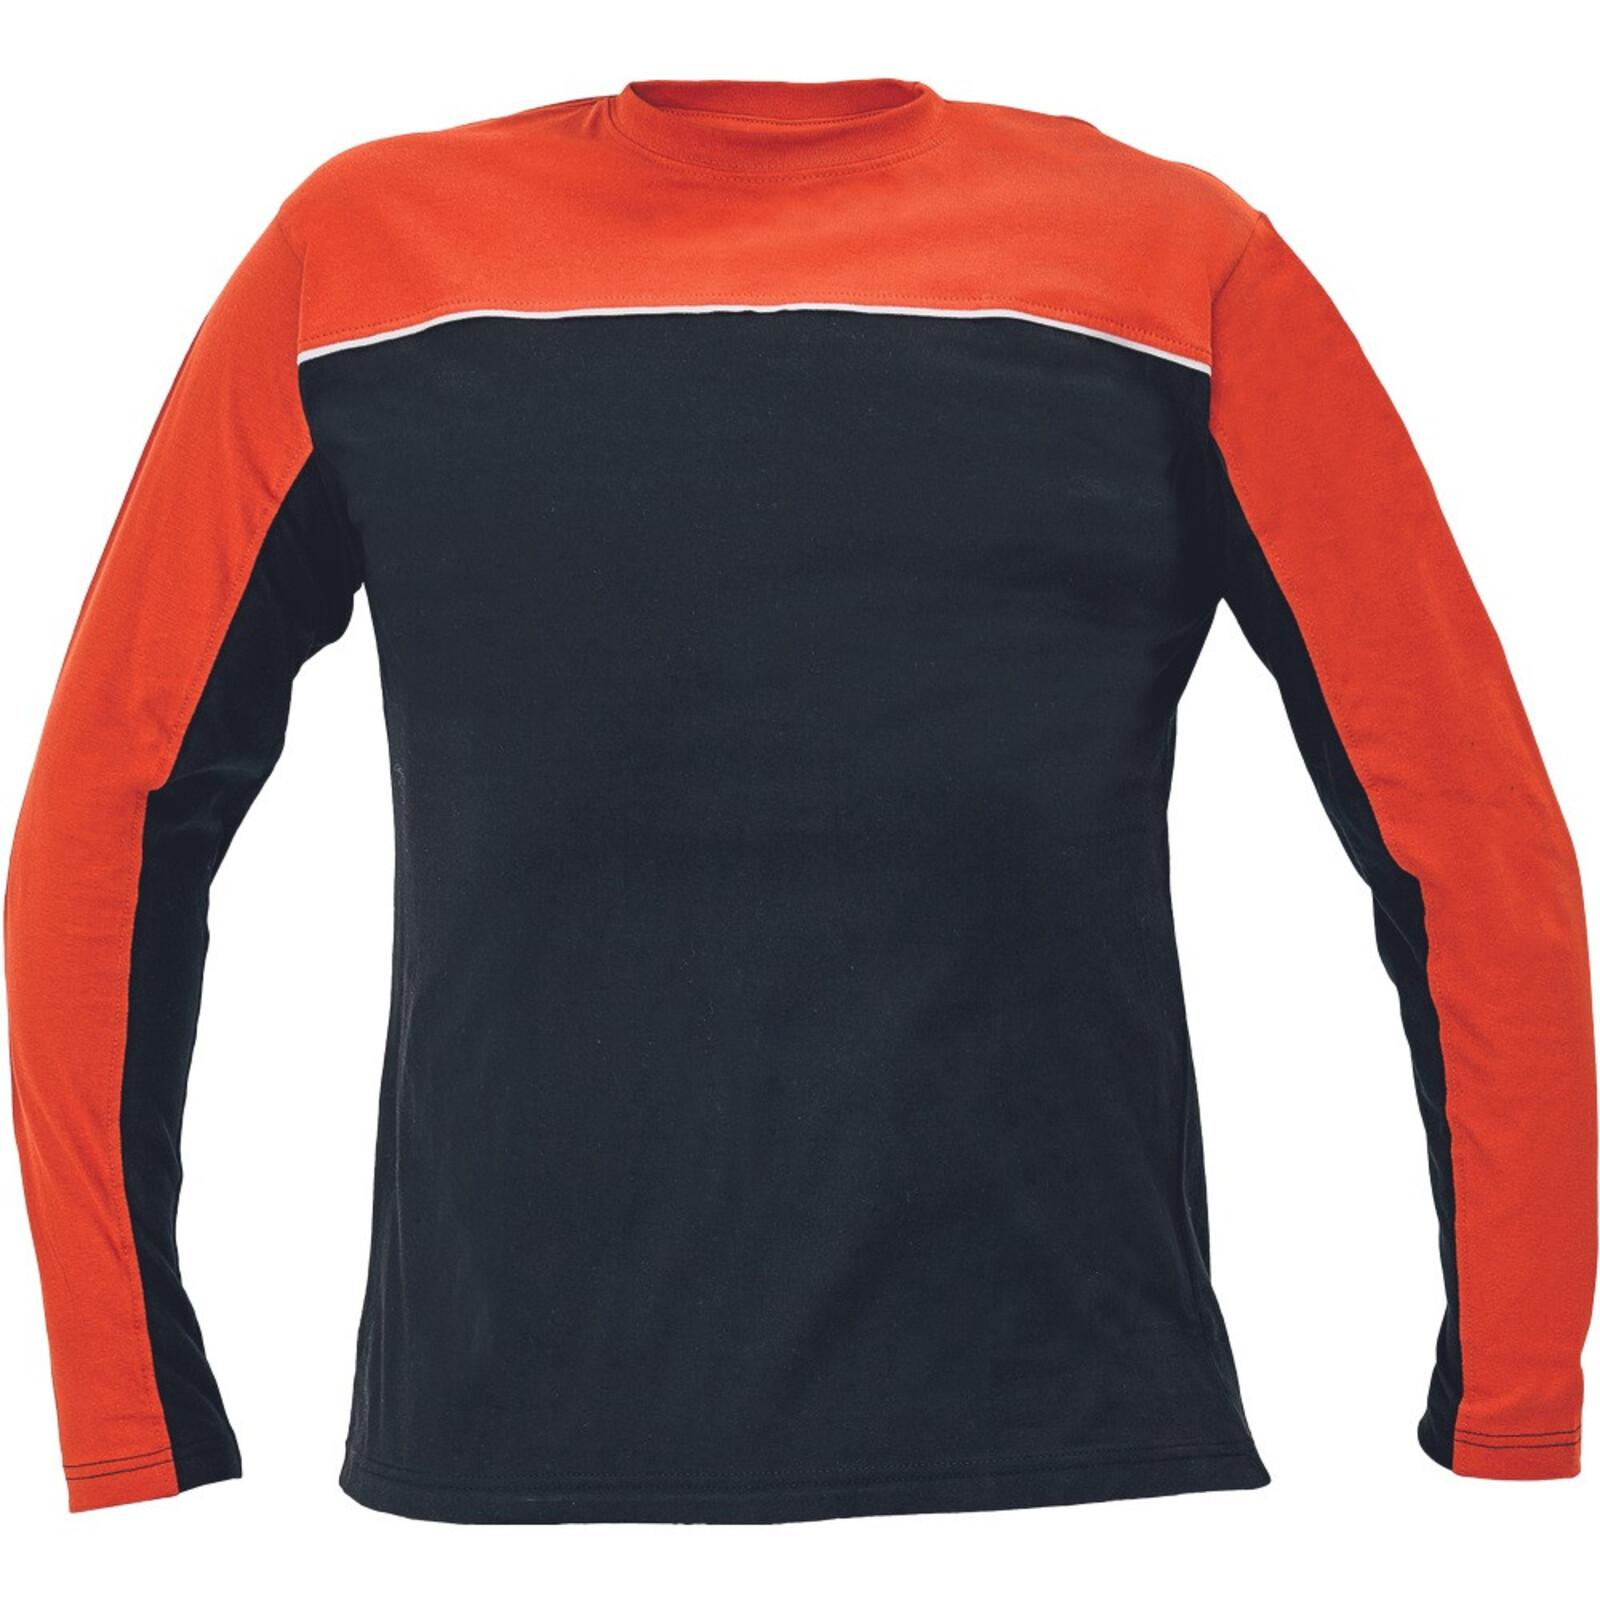 Bavlnené tričko s dlhým rukávom Emerton - veľkosť: M, farba: čierna/oranžová